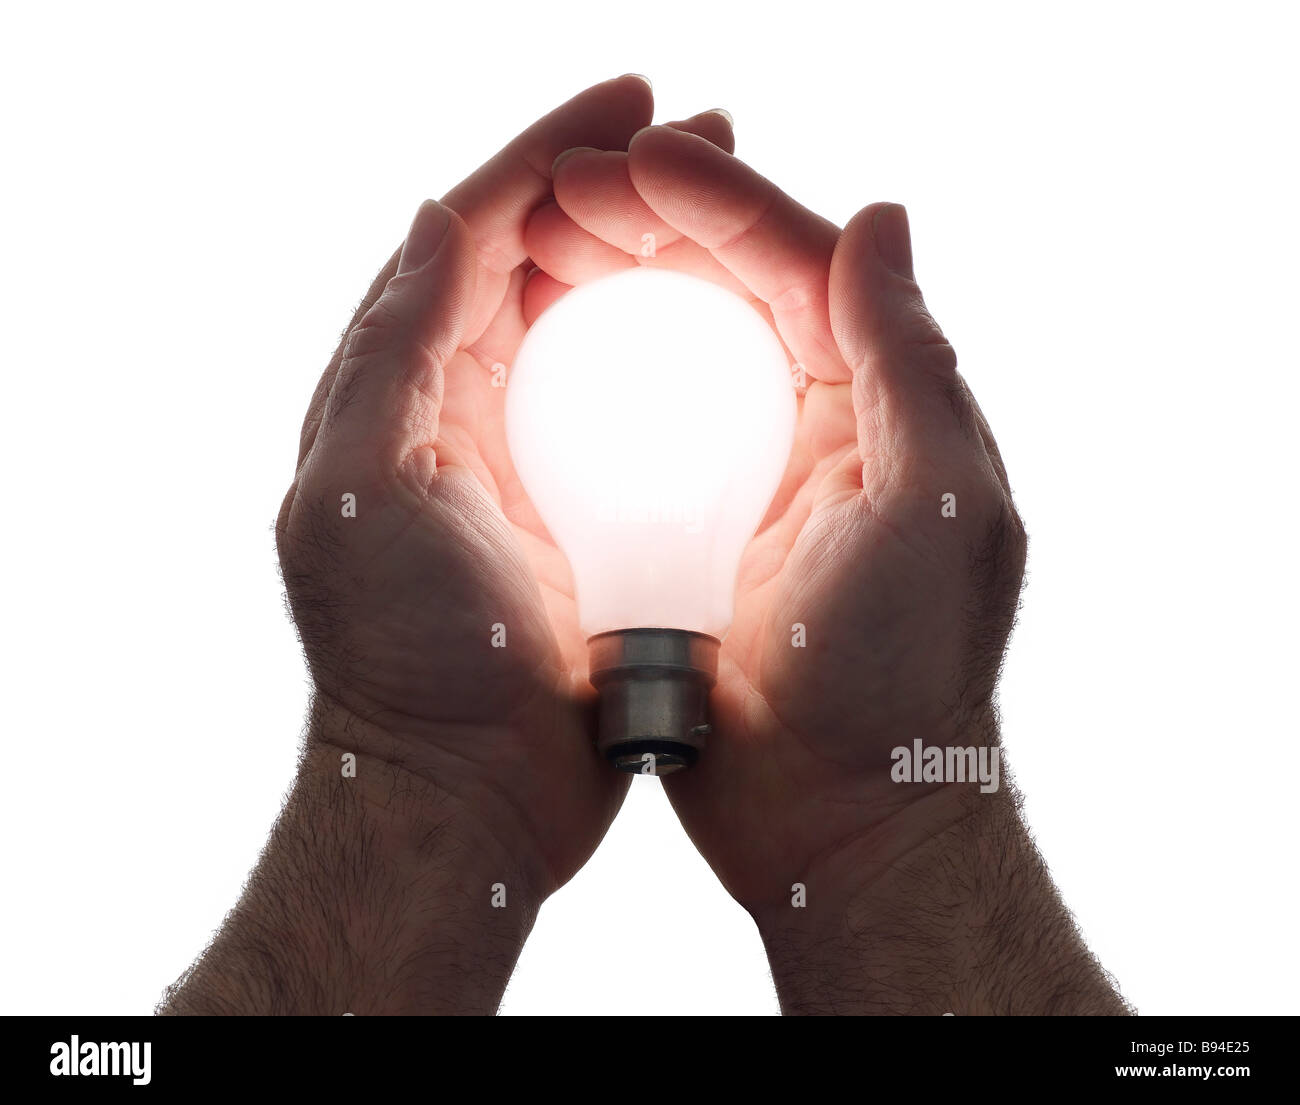 Mani tenendo accesa la lampadina Foto Stock